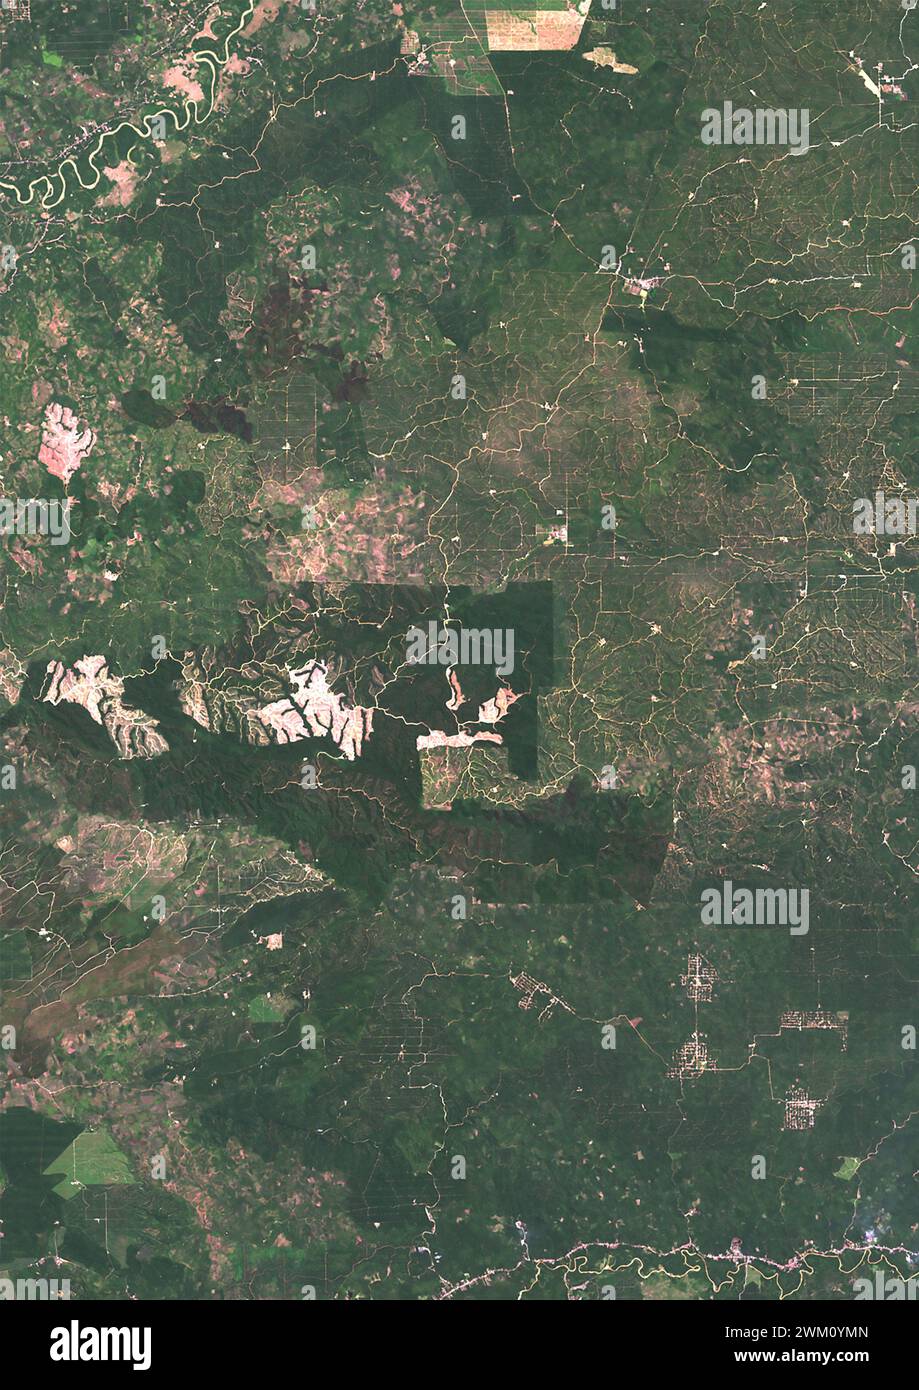 Immagine satellitare a colori della piantagione di palme da olio nel nord di Sumatra nel 2021. Foto Stock